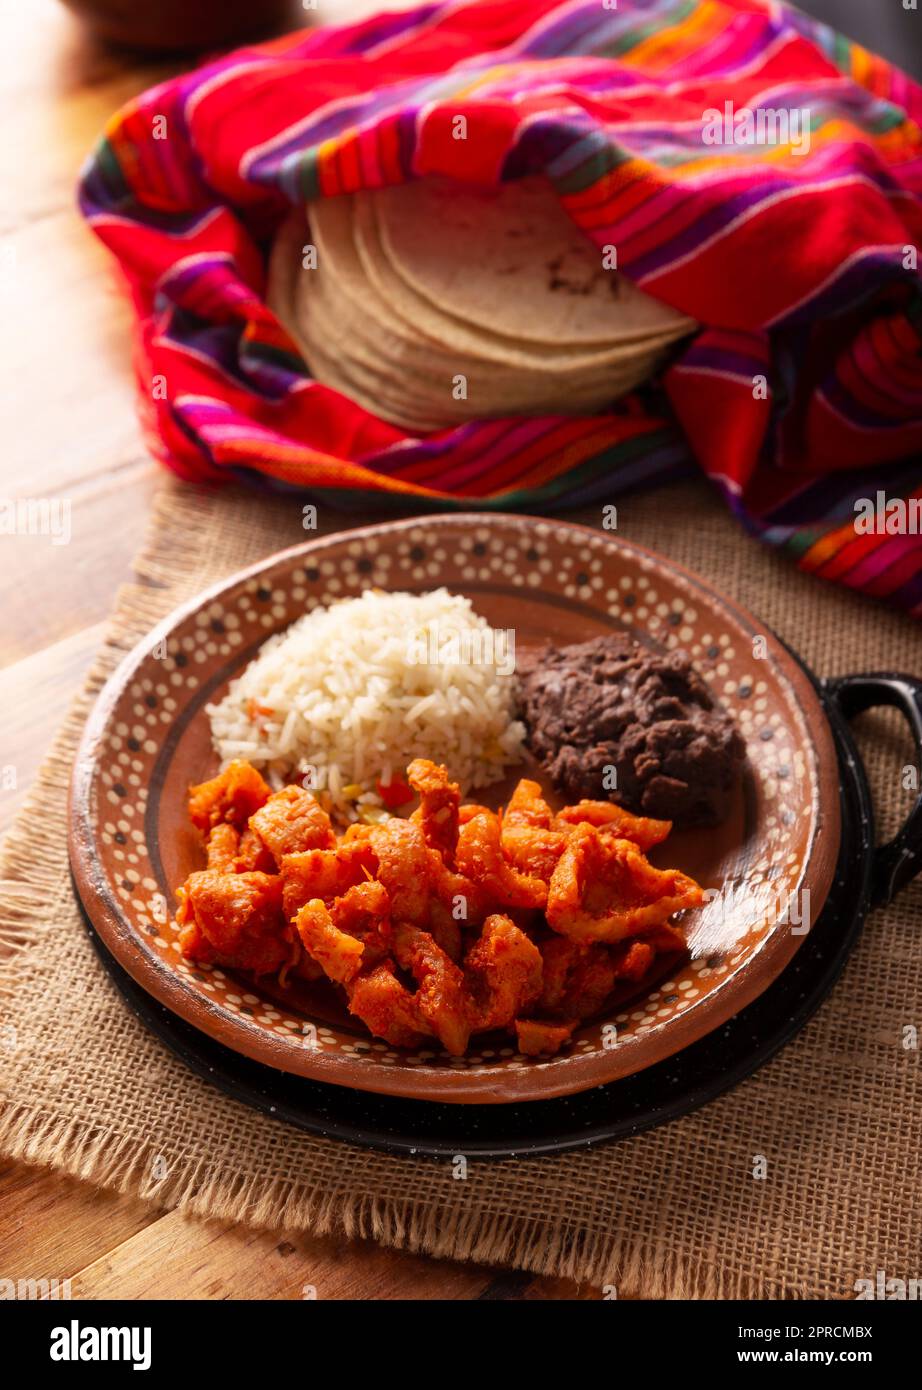 Rince-porc à la sauce rouge, accompagné de riz et de haricots réfrits. Plat traditionnel fait maison très populaire au Mexique, ce plat fait partie du popoul Banque D'Images